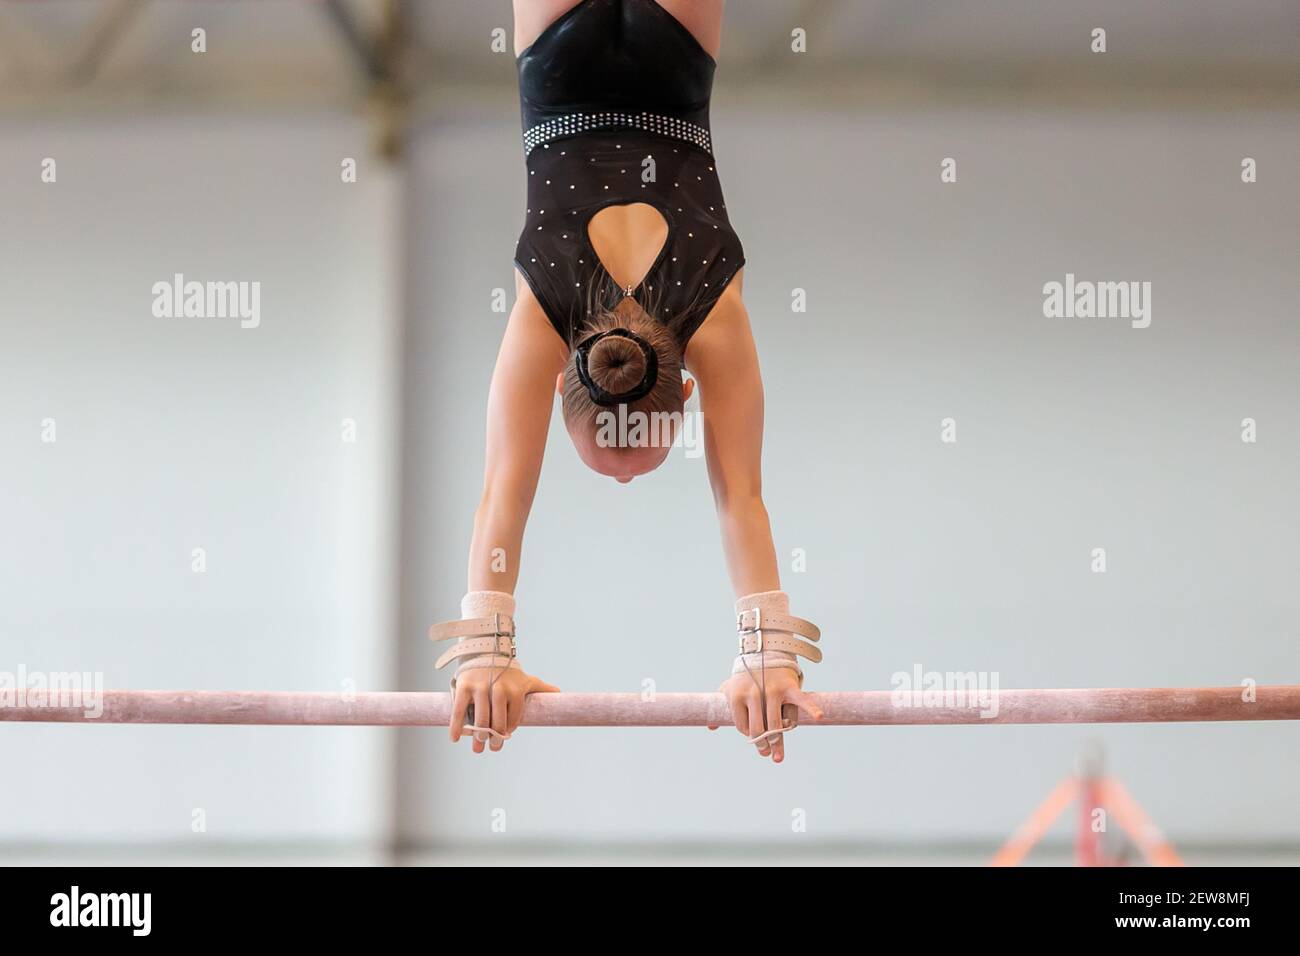 Une fille de vêtements de sport effectue un exercice sur les barres inégales. Gymnastique rythmique, entraînement dans le hall. Banque D'Images